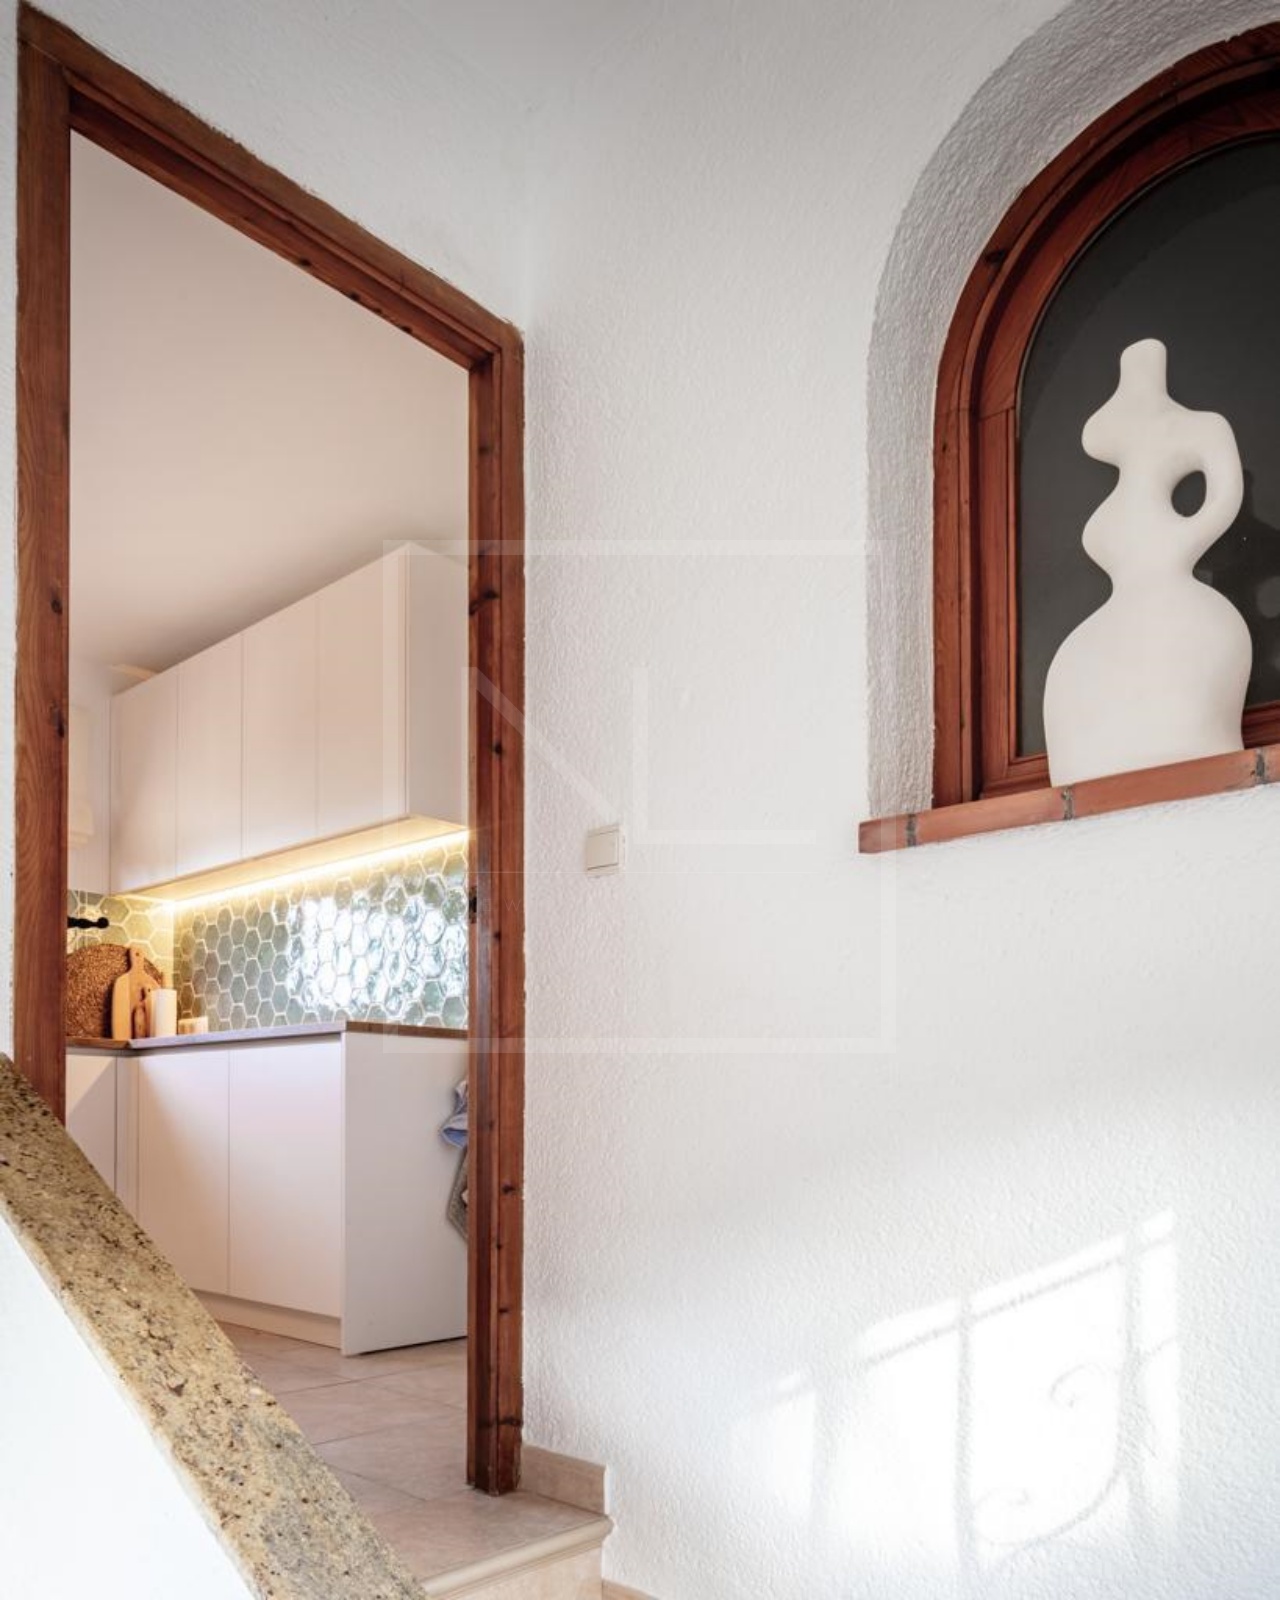 Villa de 4 dormitorios y 4 baños en venta en Jávea